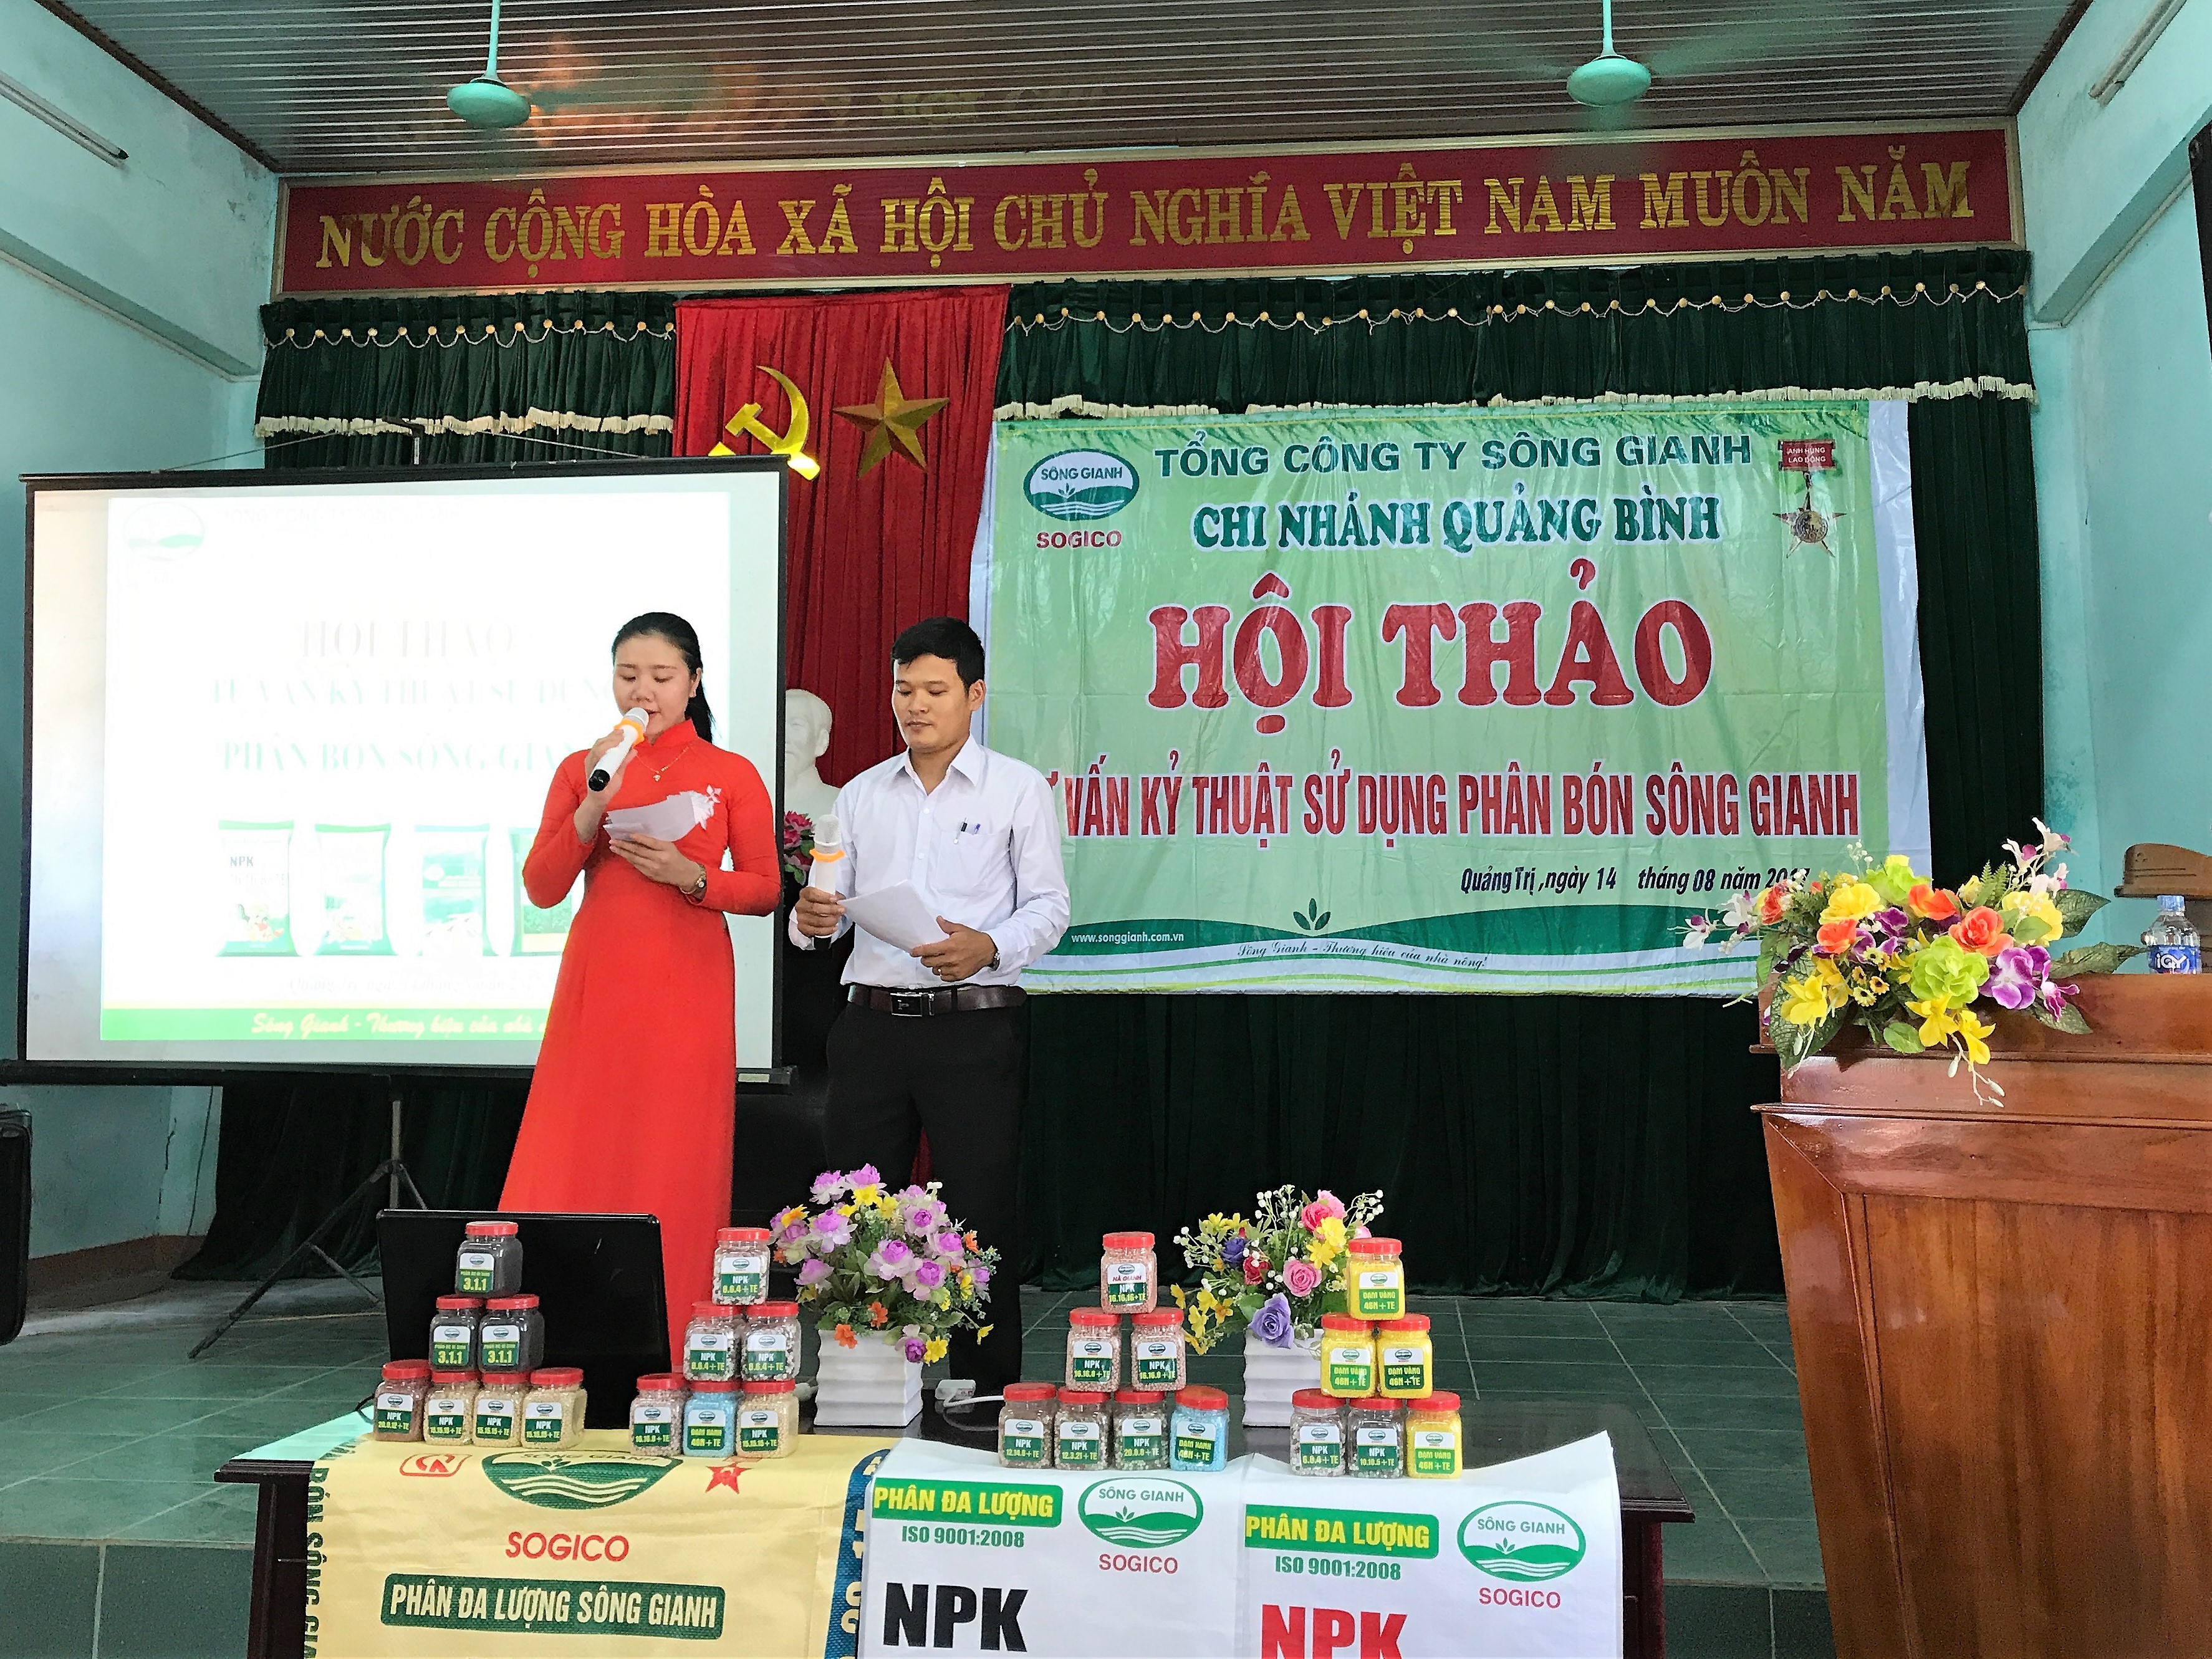 Tổng công ty Sông Gianh- Chi nhánh Quảng Bình tổ chức thành công Hội thảo tư vấn khoa học kỹ thuật sử dụng phân bón Sông Gianh tại Quảng Trị